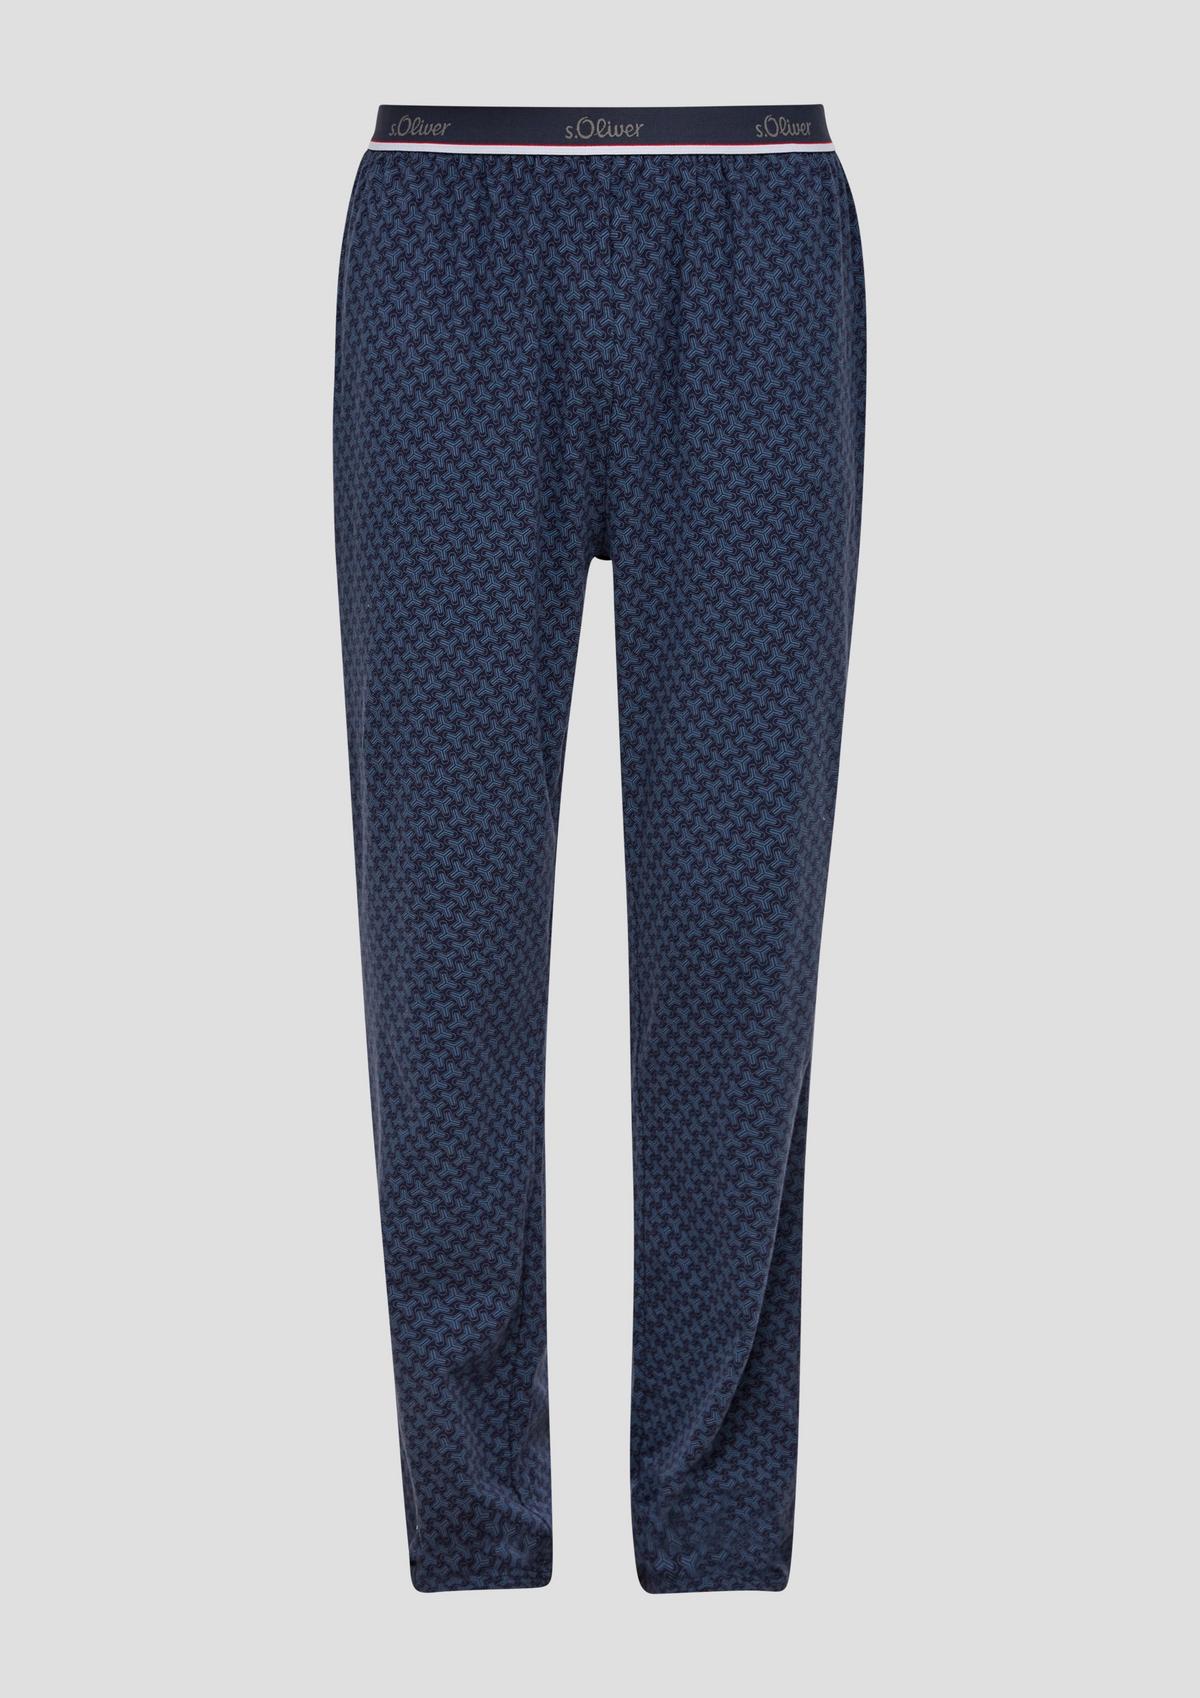 Pyjamas für Herren jetzt kaufen im Shop Online